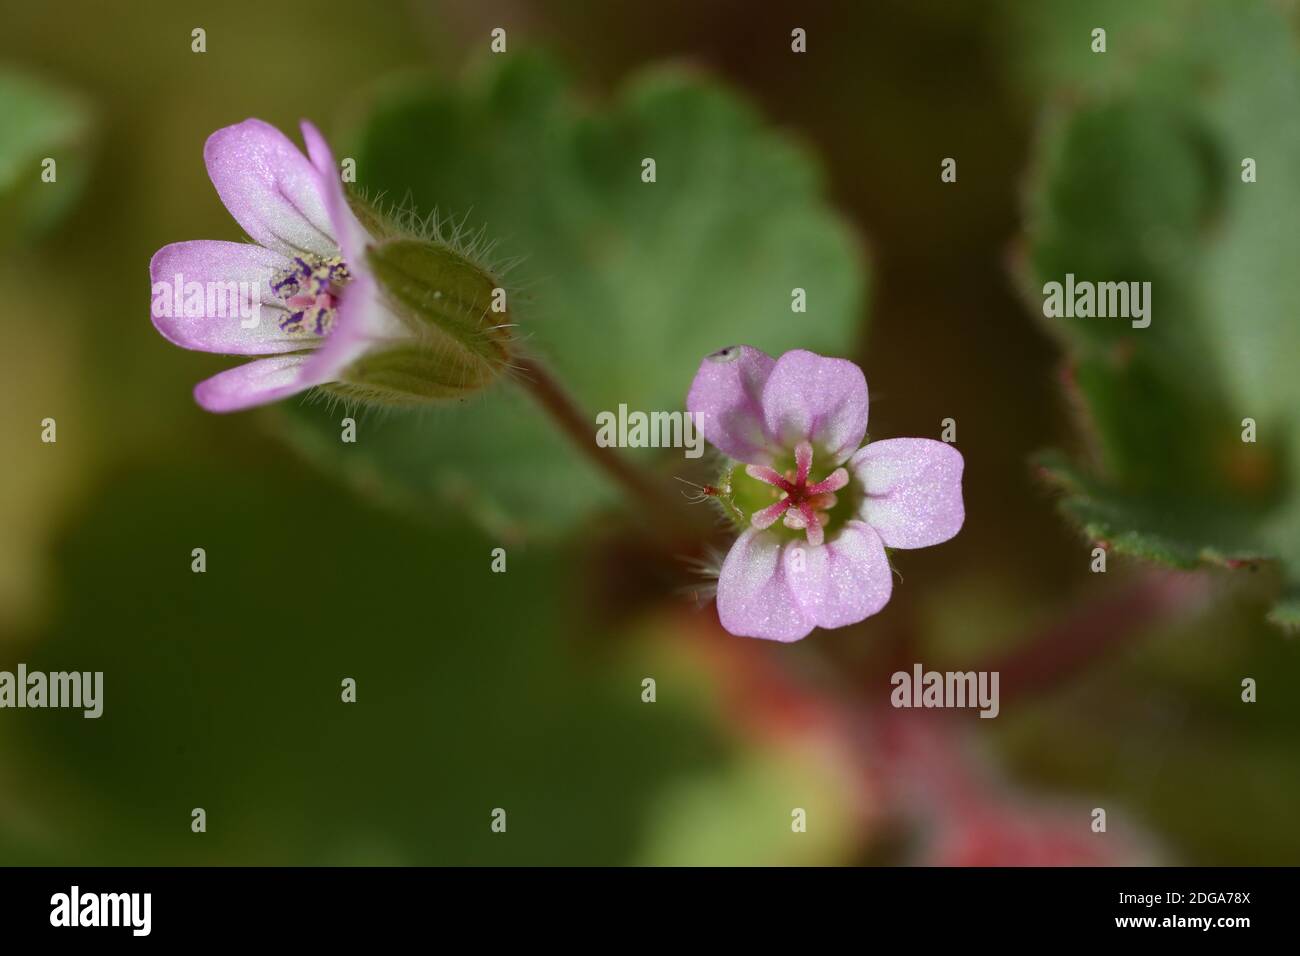 Macro photographie d'une fleur sauvage de l'espèce Geranium rotundifolium, avec des dimensions microscopiques ne dépassant pas un demi-centimètre. Banque D'Images